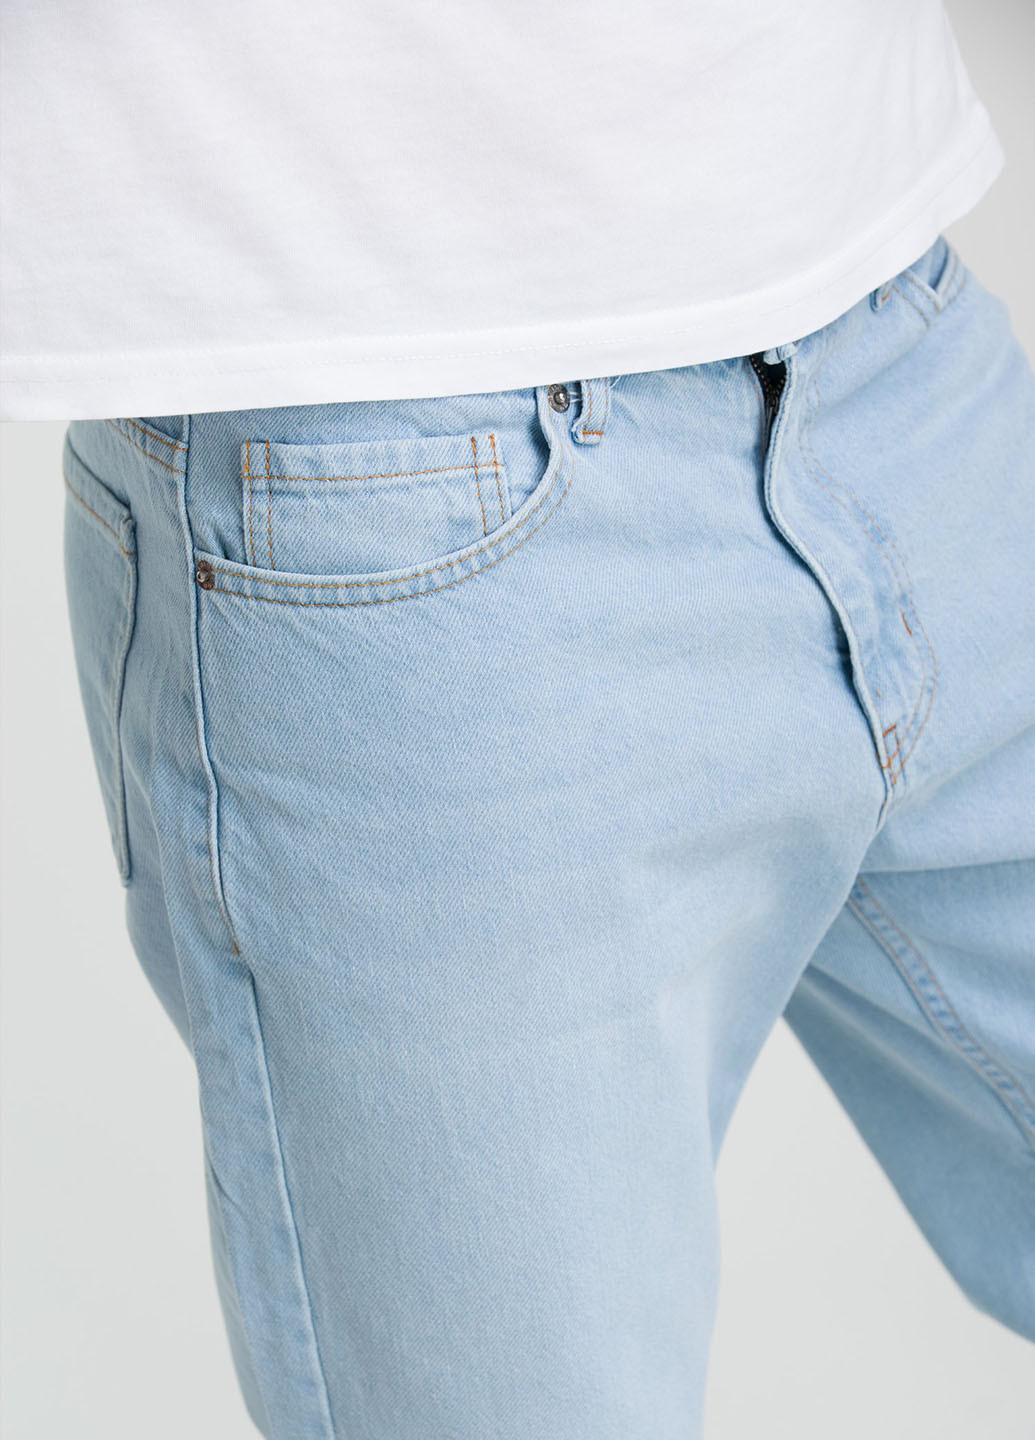 Голубые демисезонные бойфренды джинсы Trend Collection